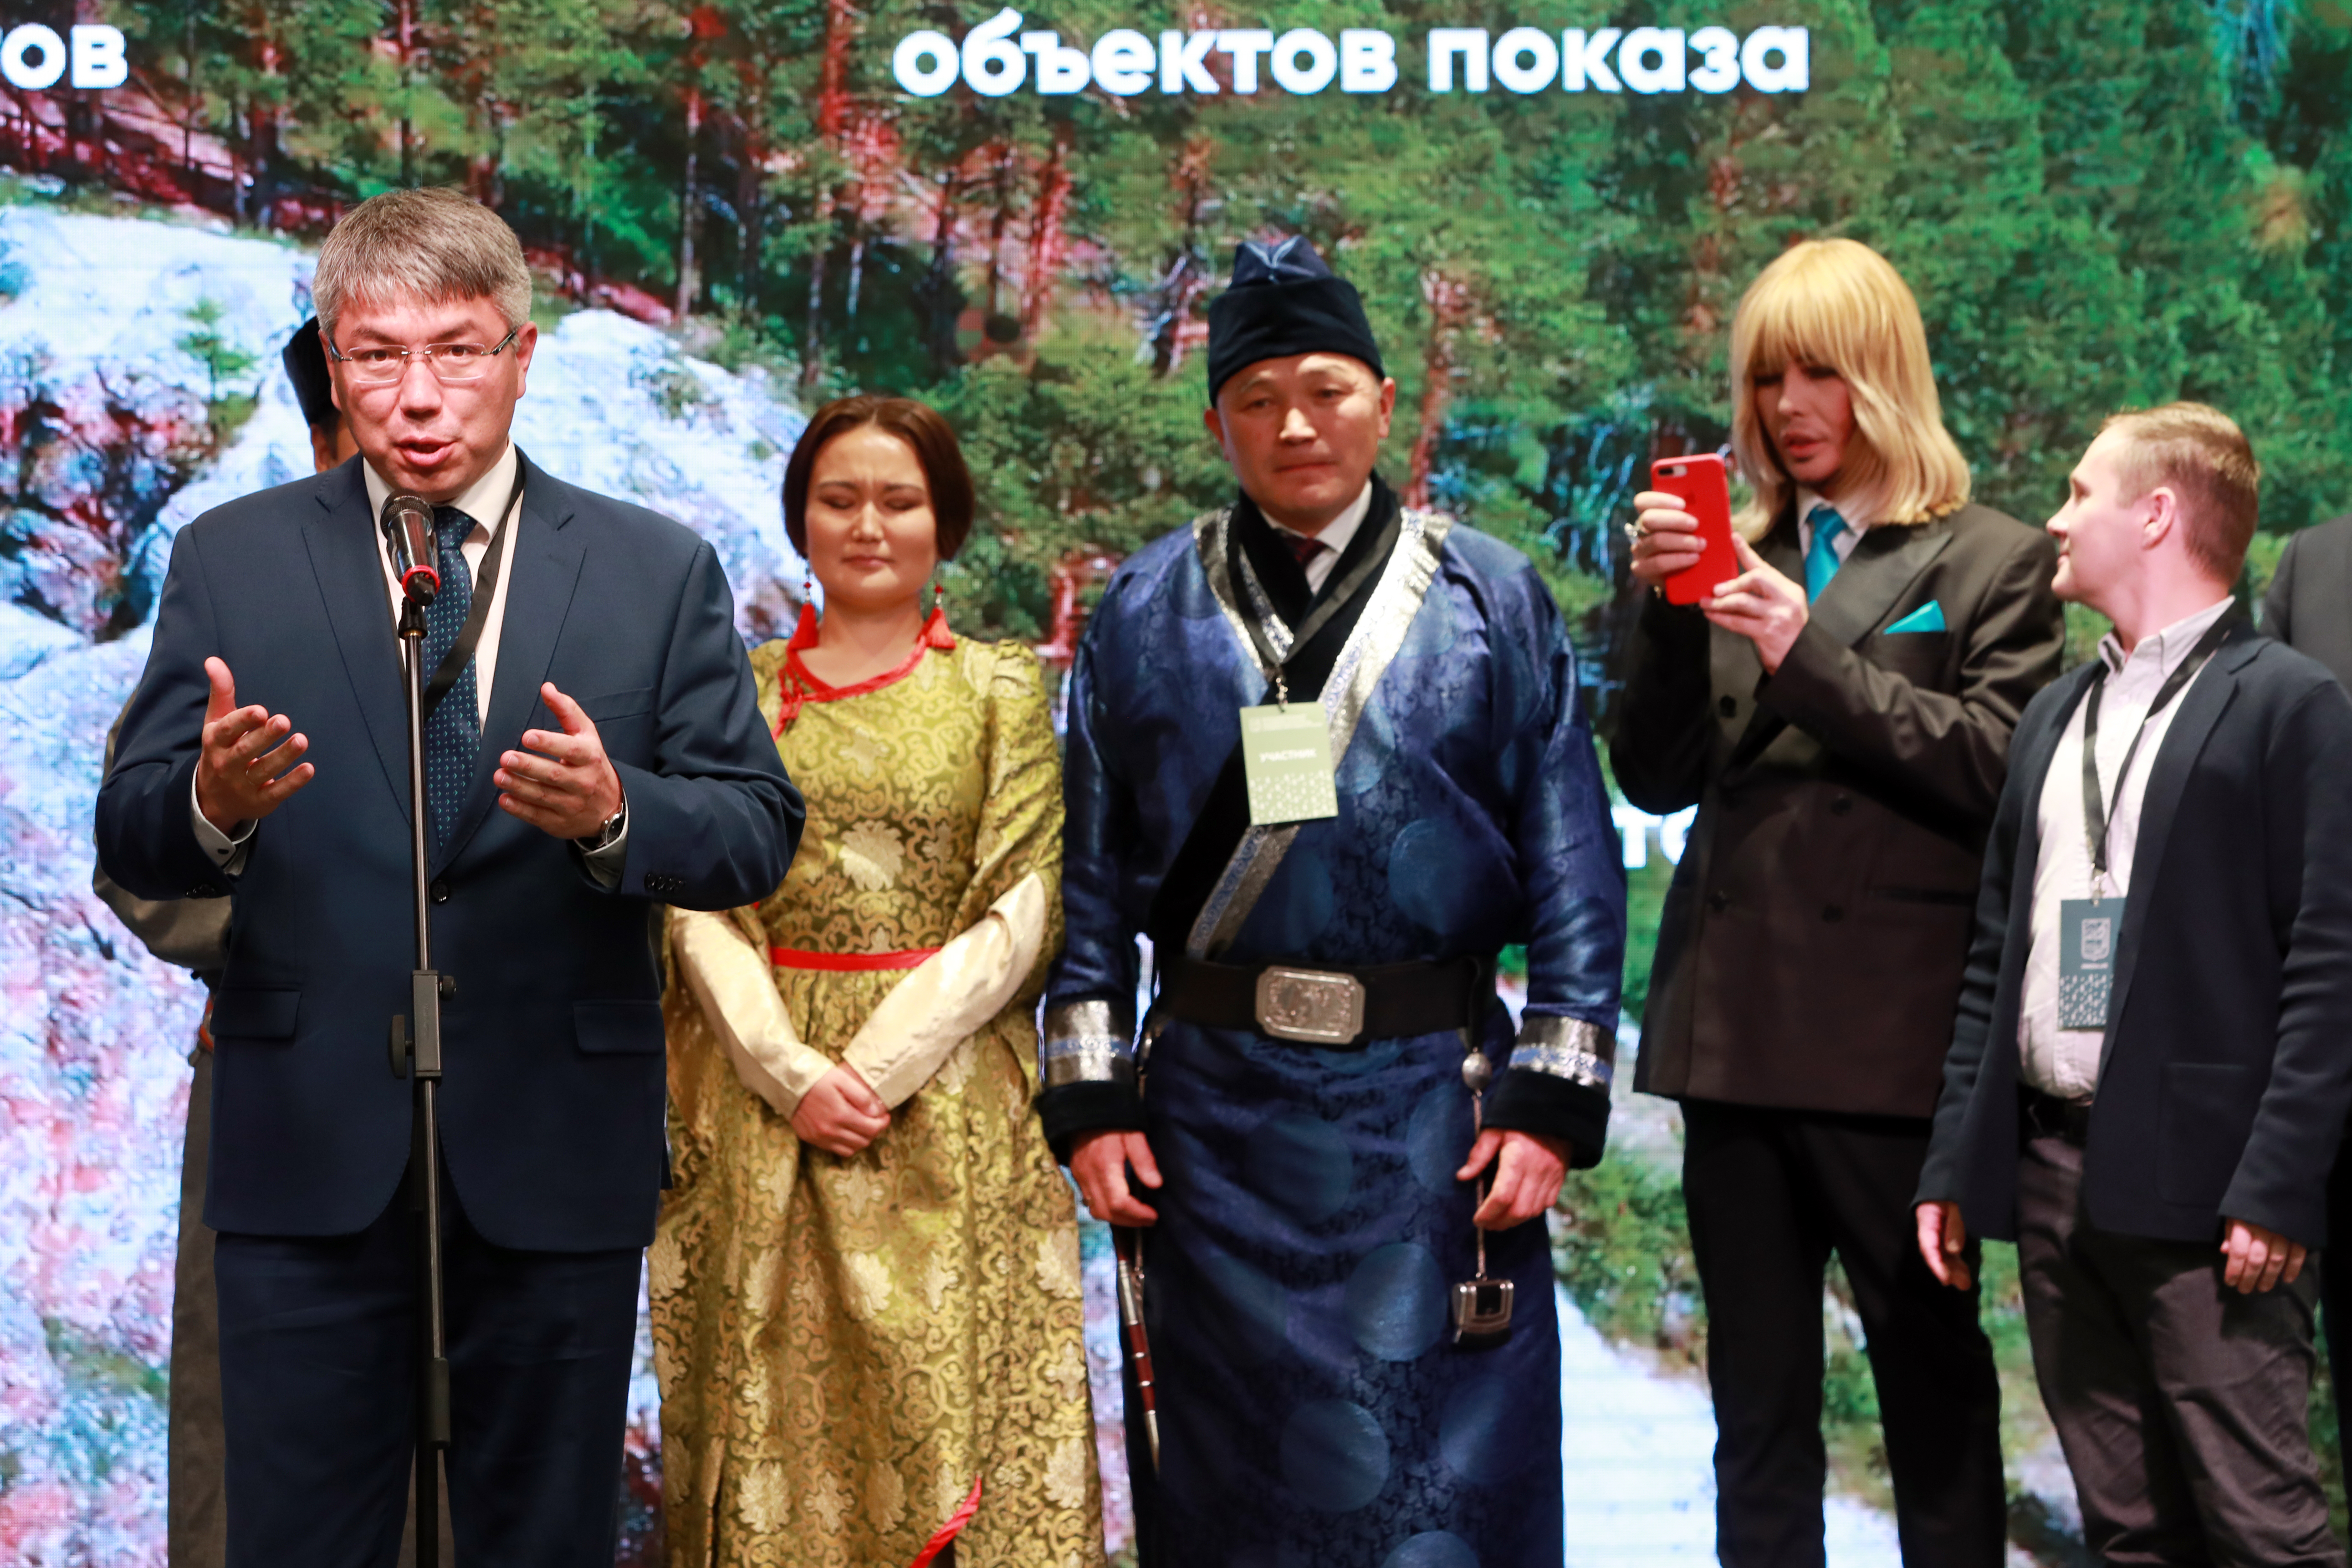 Глава Республики Бурятия Алексей Цыденов приехал на финал конкурса поддержать земляков. Фото предоставлено АСИ